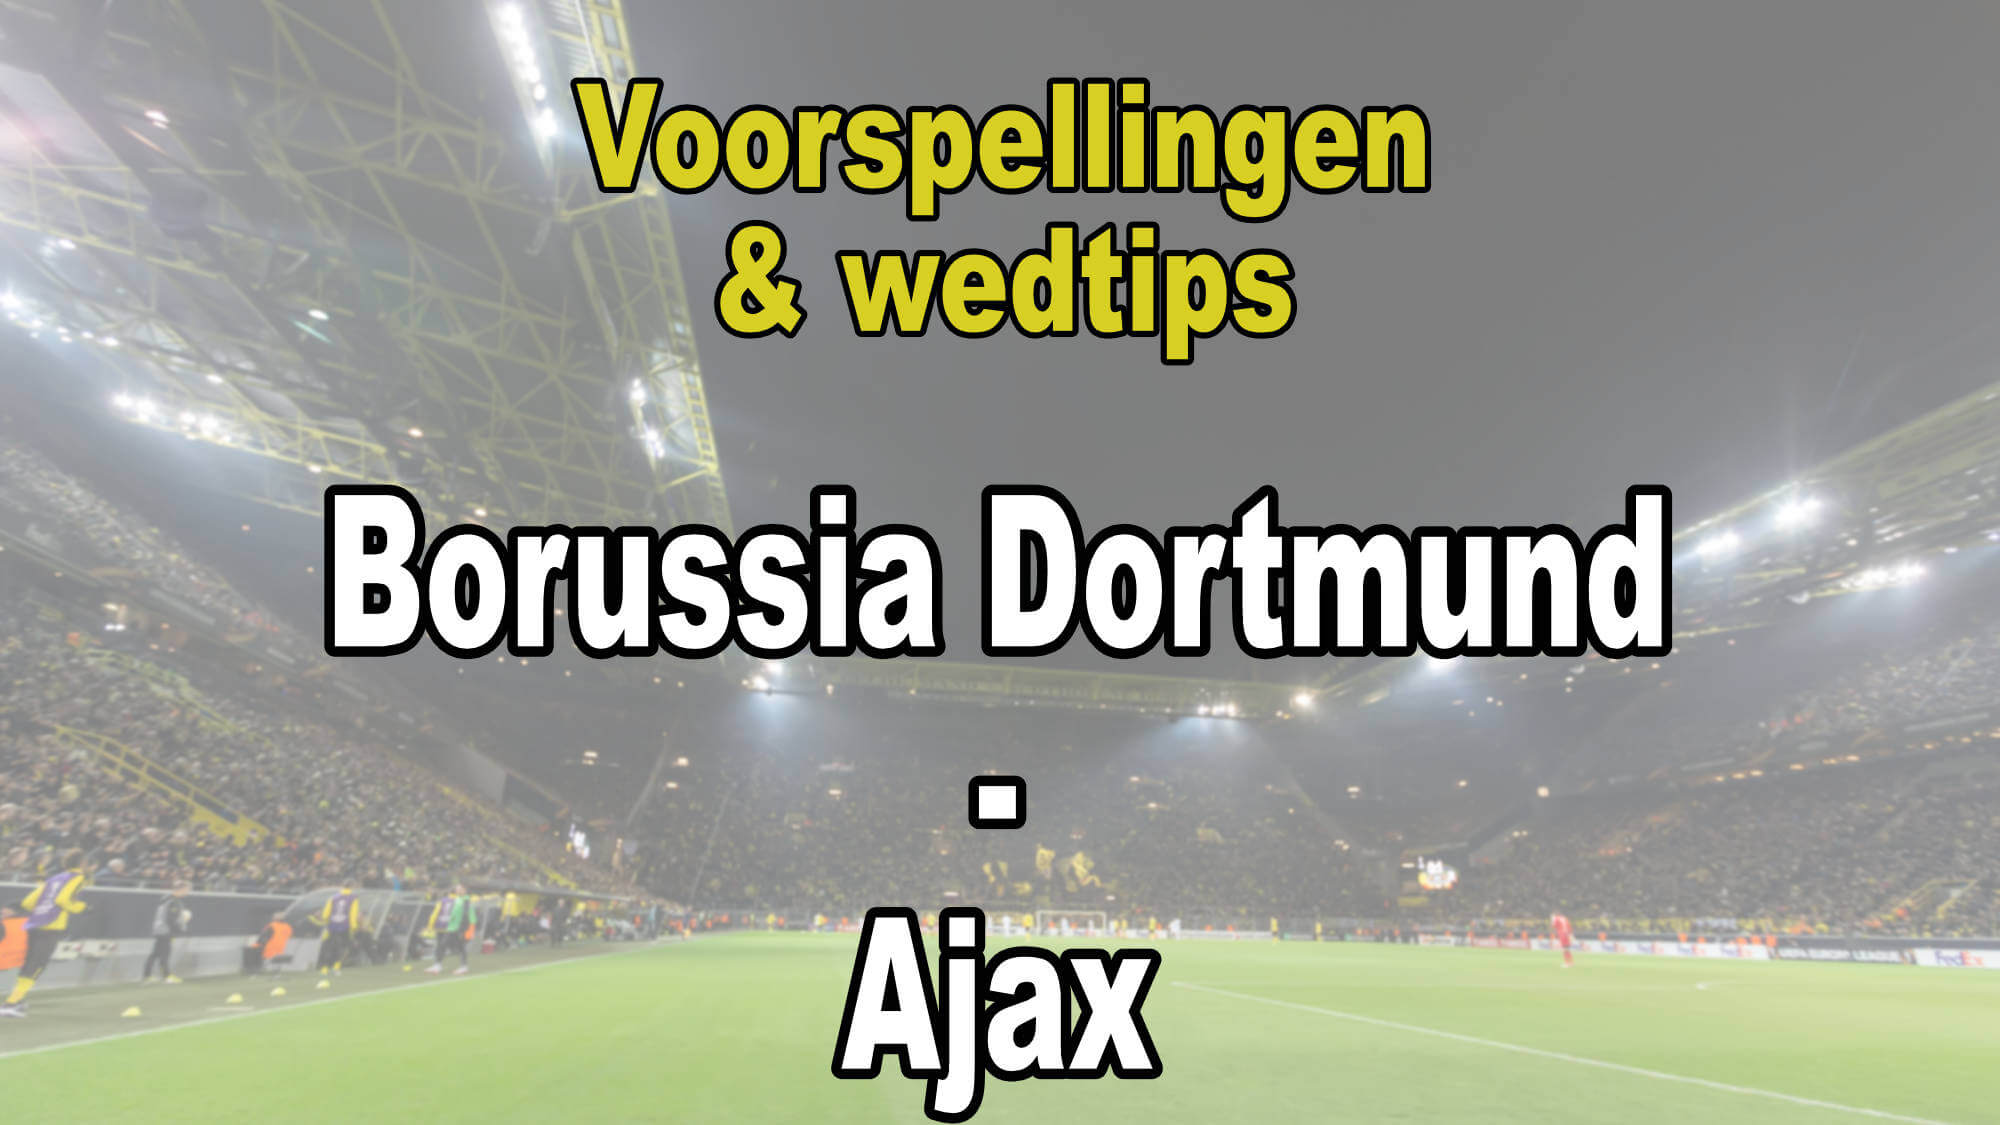 Borussia Dortmund - Ajax - Voorspellingen